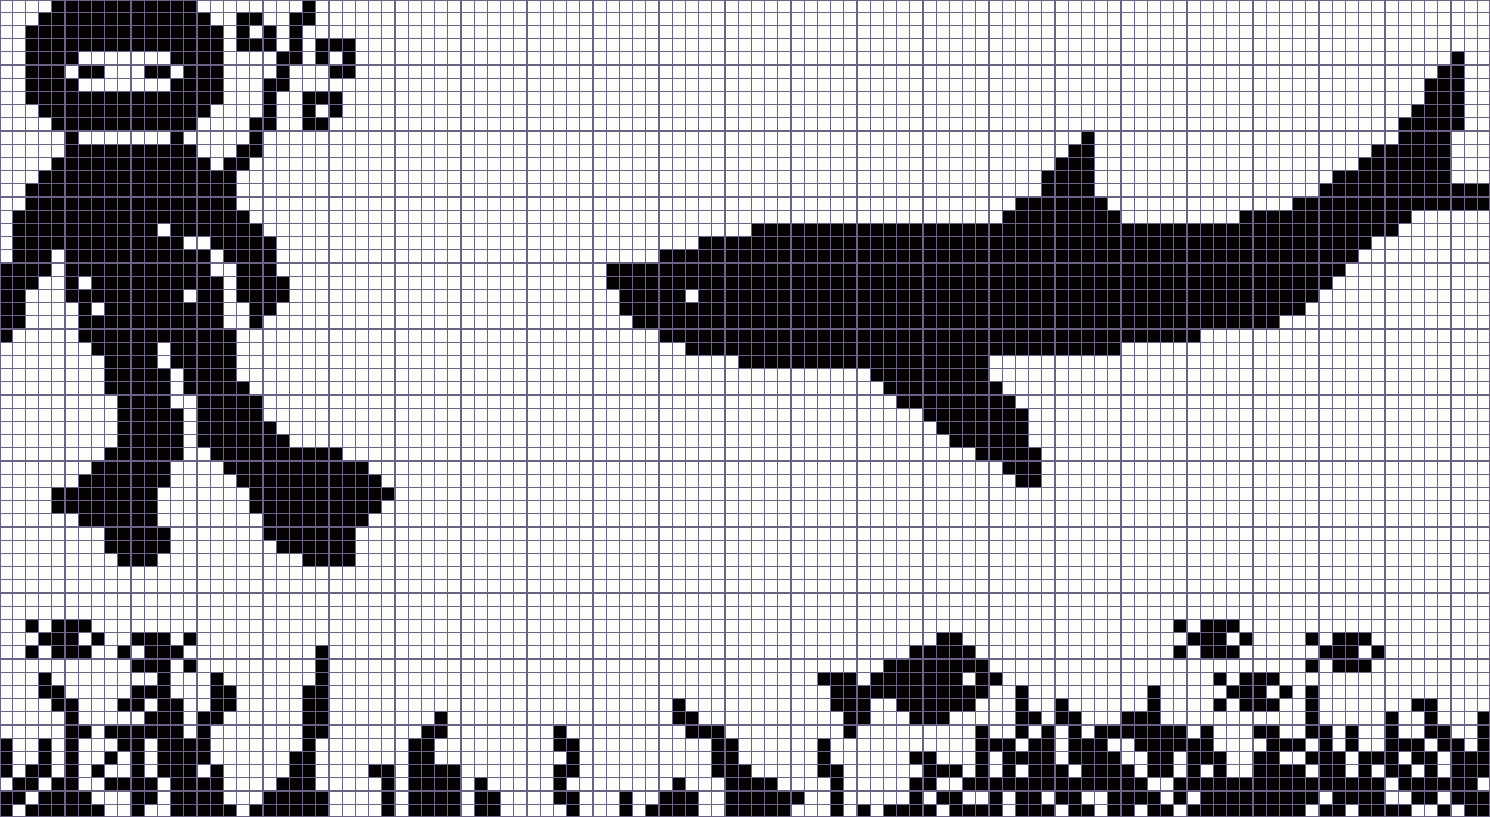 Японский кроссворд водный мир - 113x62